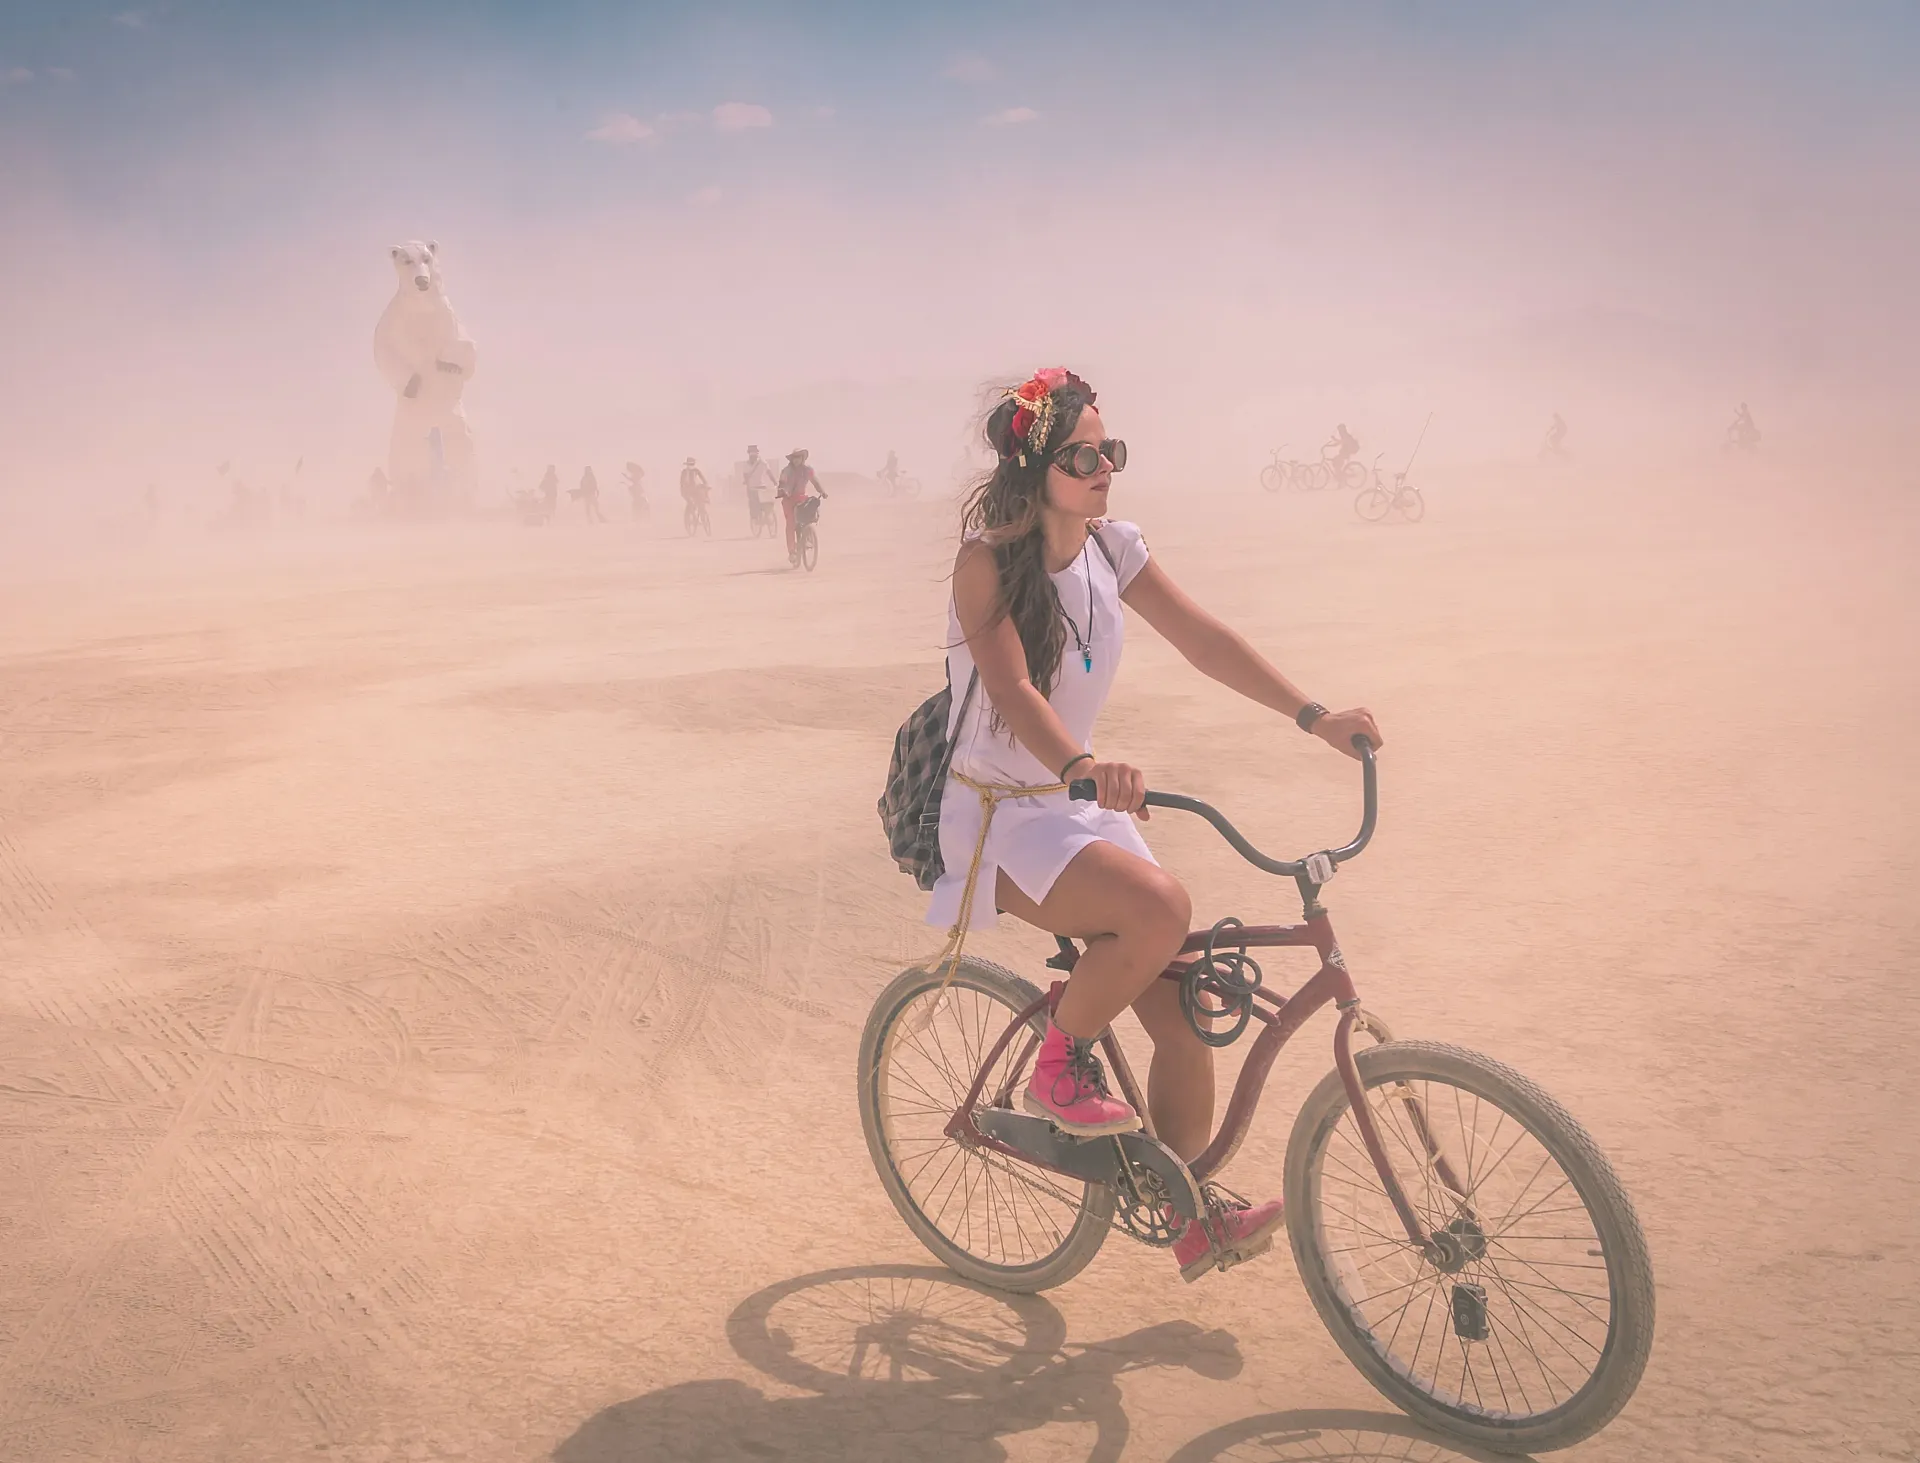 Debido al covid-19, Burning Man no se ha celebrado en 2020 y 2021, aunque sus organizadores esperan retomarlo pronto (foto: Curtis Simmons).